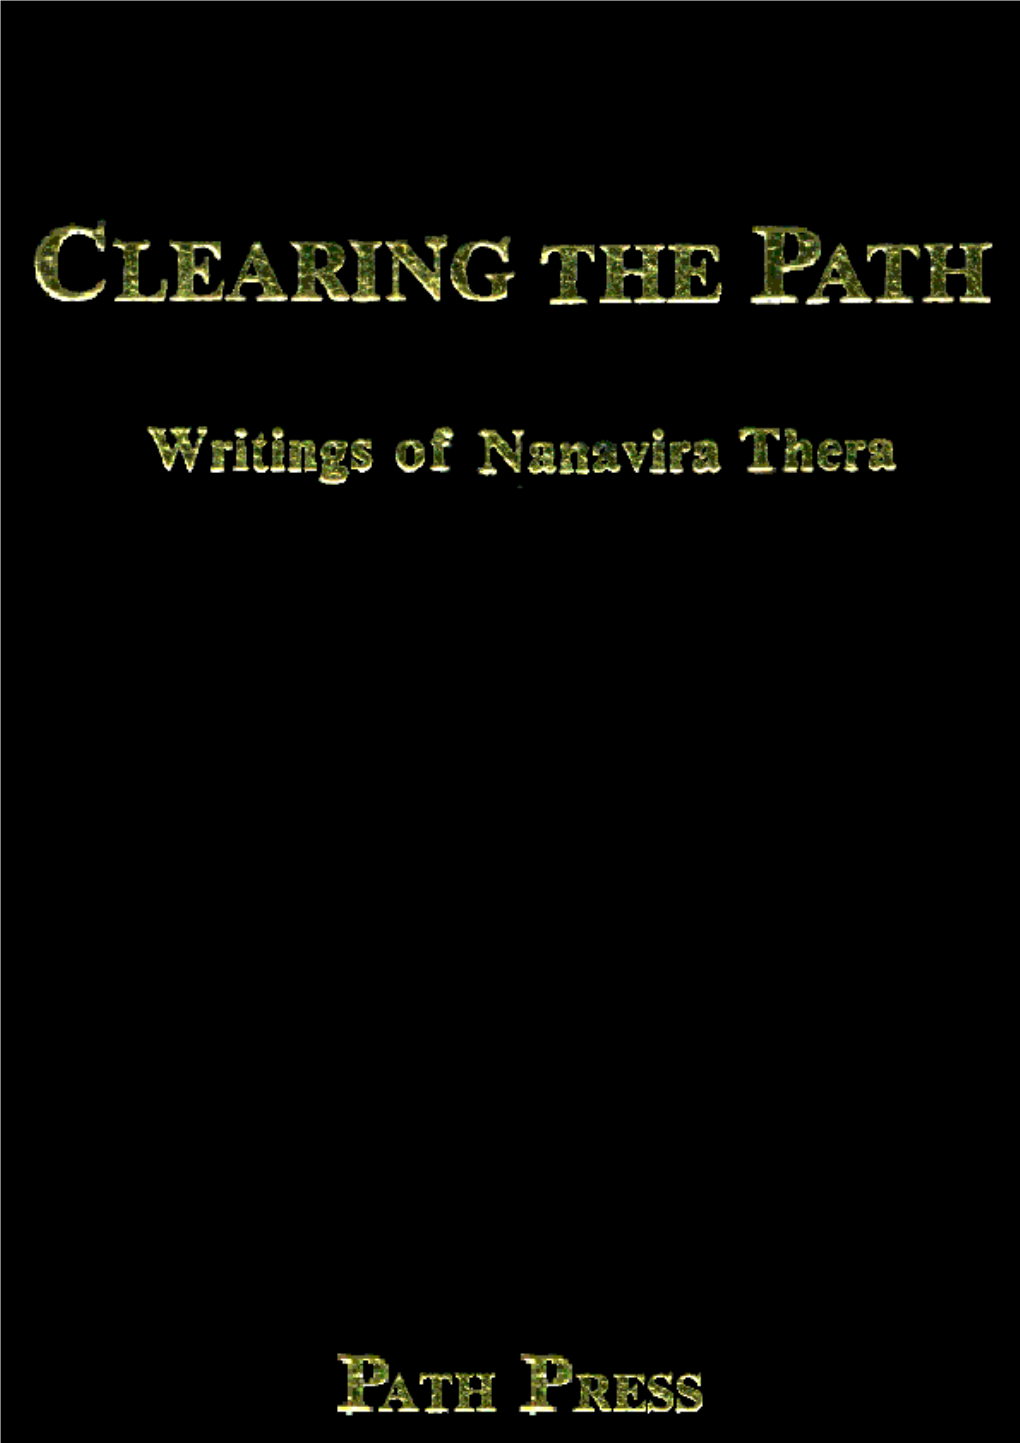 "Clearing the Path" Writings of Nanavira Thera (1960-1965)